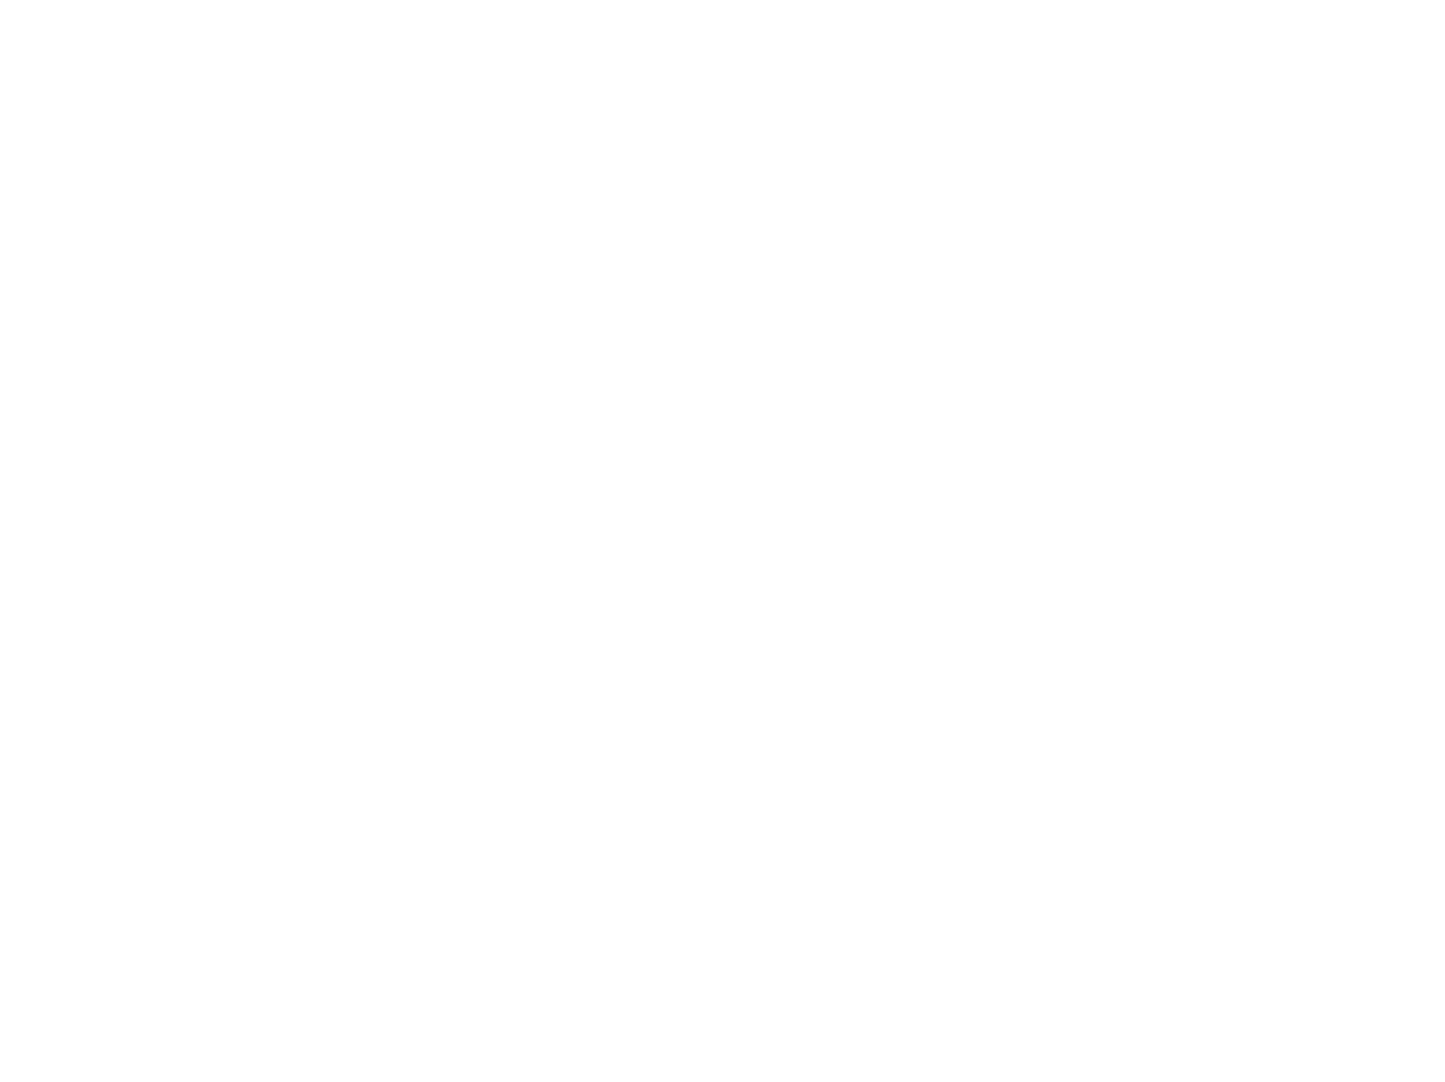 Hit Hard, Run Fast, Turn Left Baseball Shirt